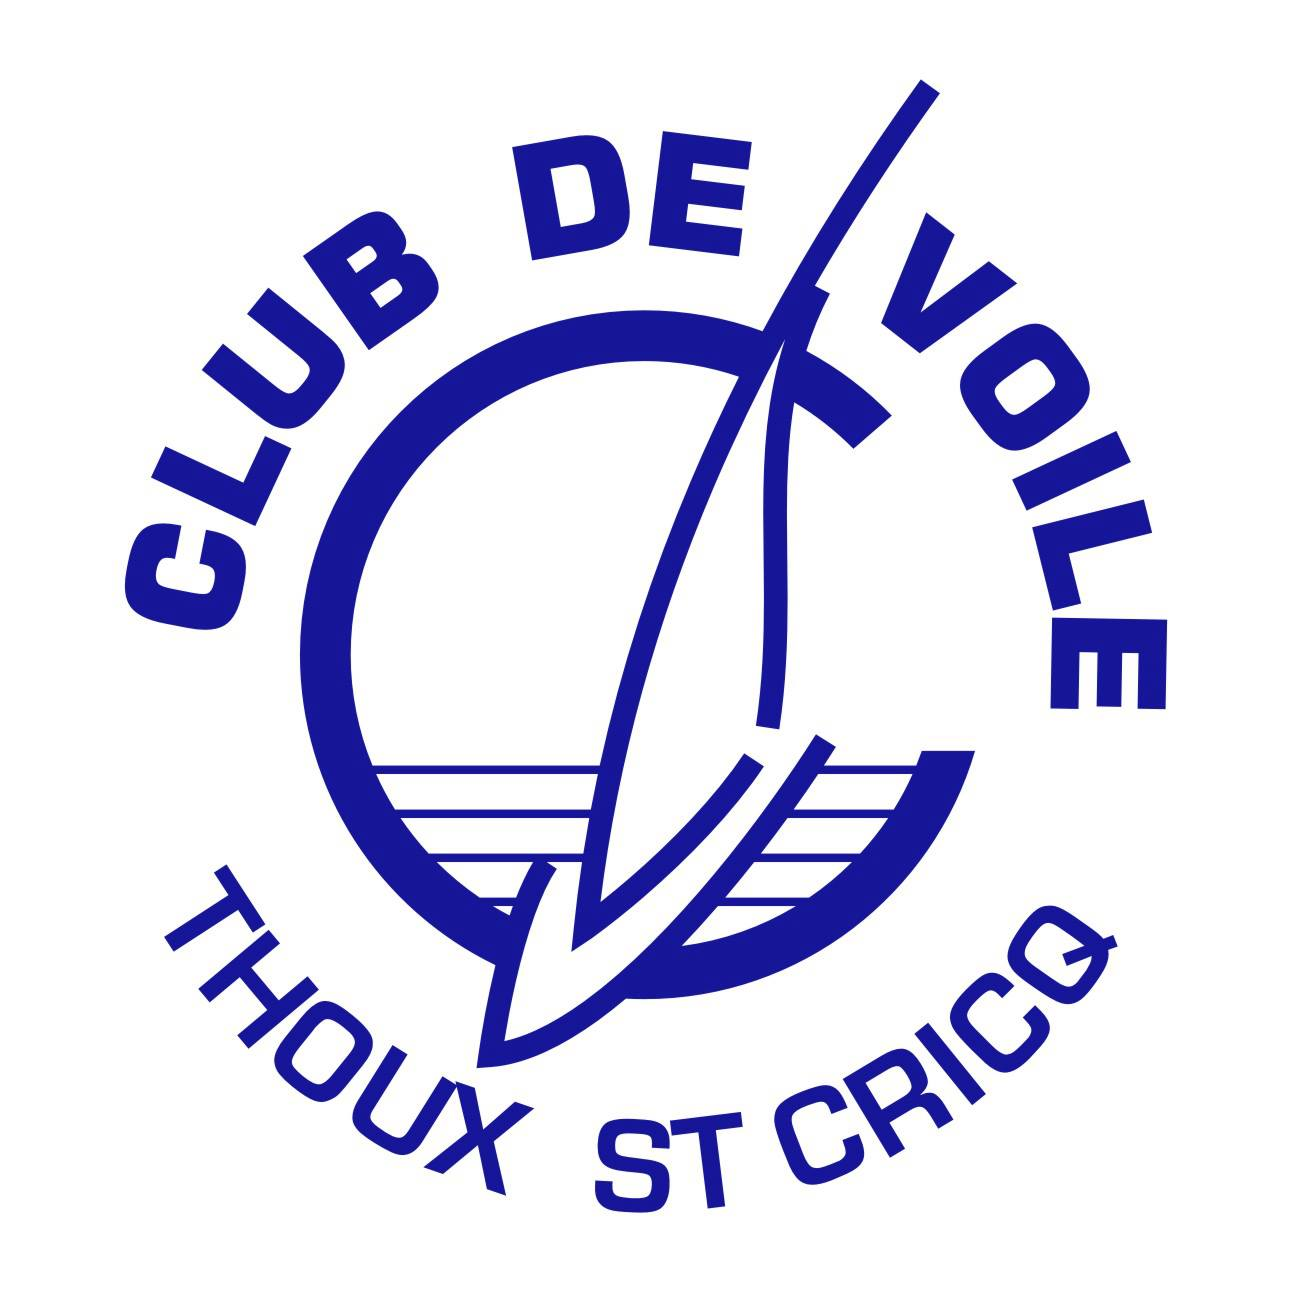 Club de Voile de Thoux Saint-Cricq